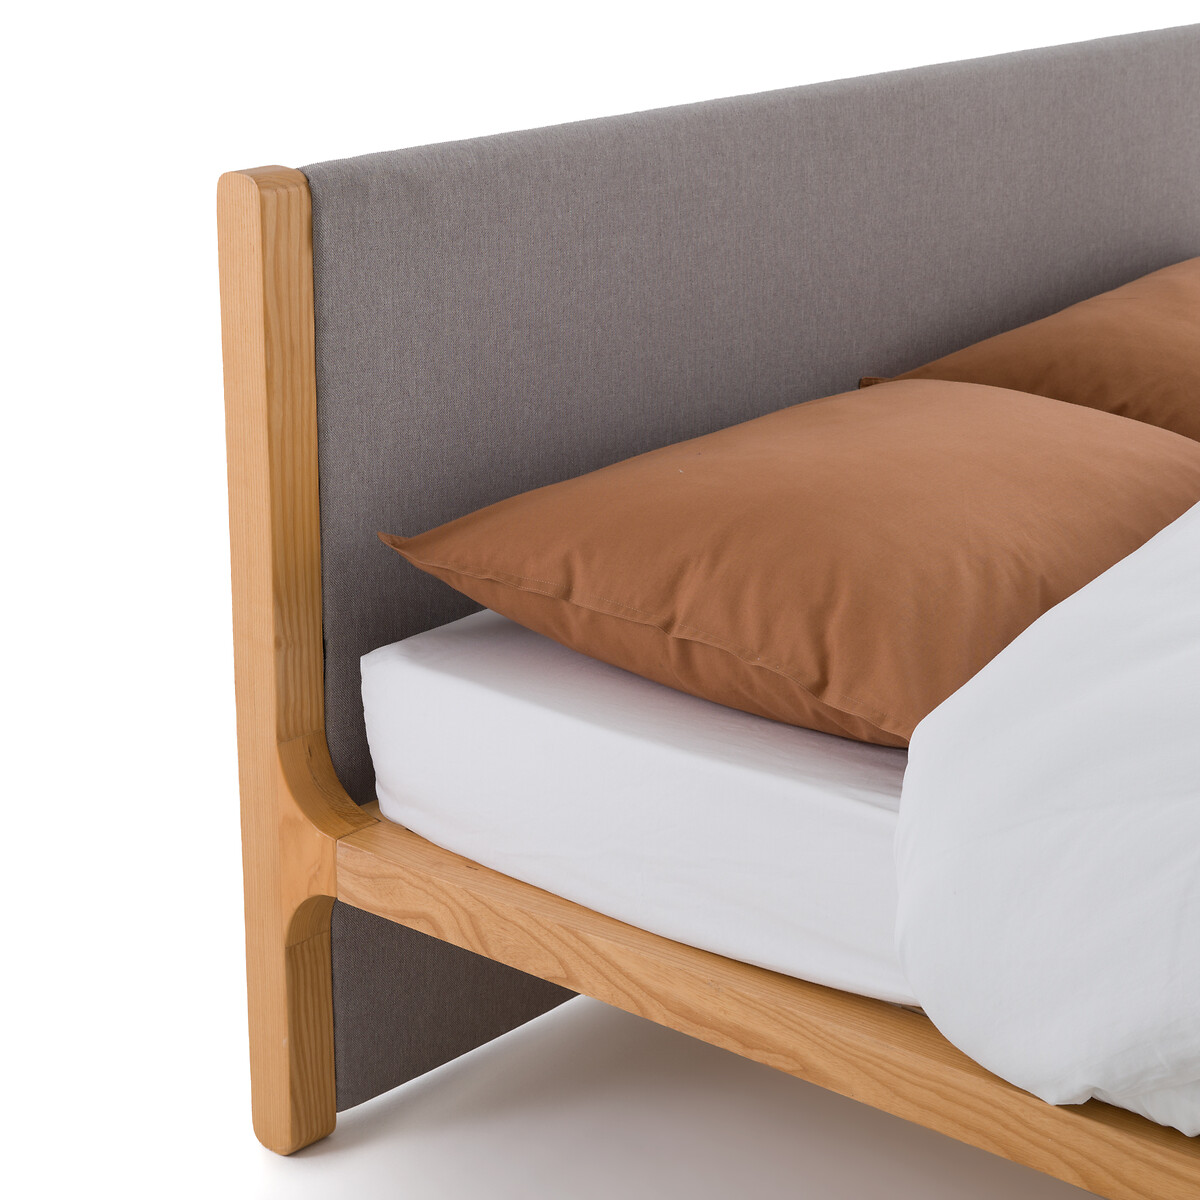 Кровать La Redoute С реечным дном ELORI 160 x 200 см серый, размер 160 x 200 см - фото 4